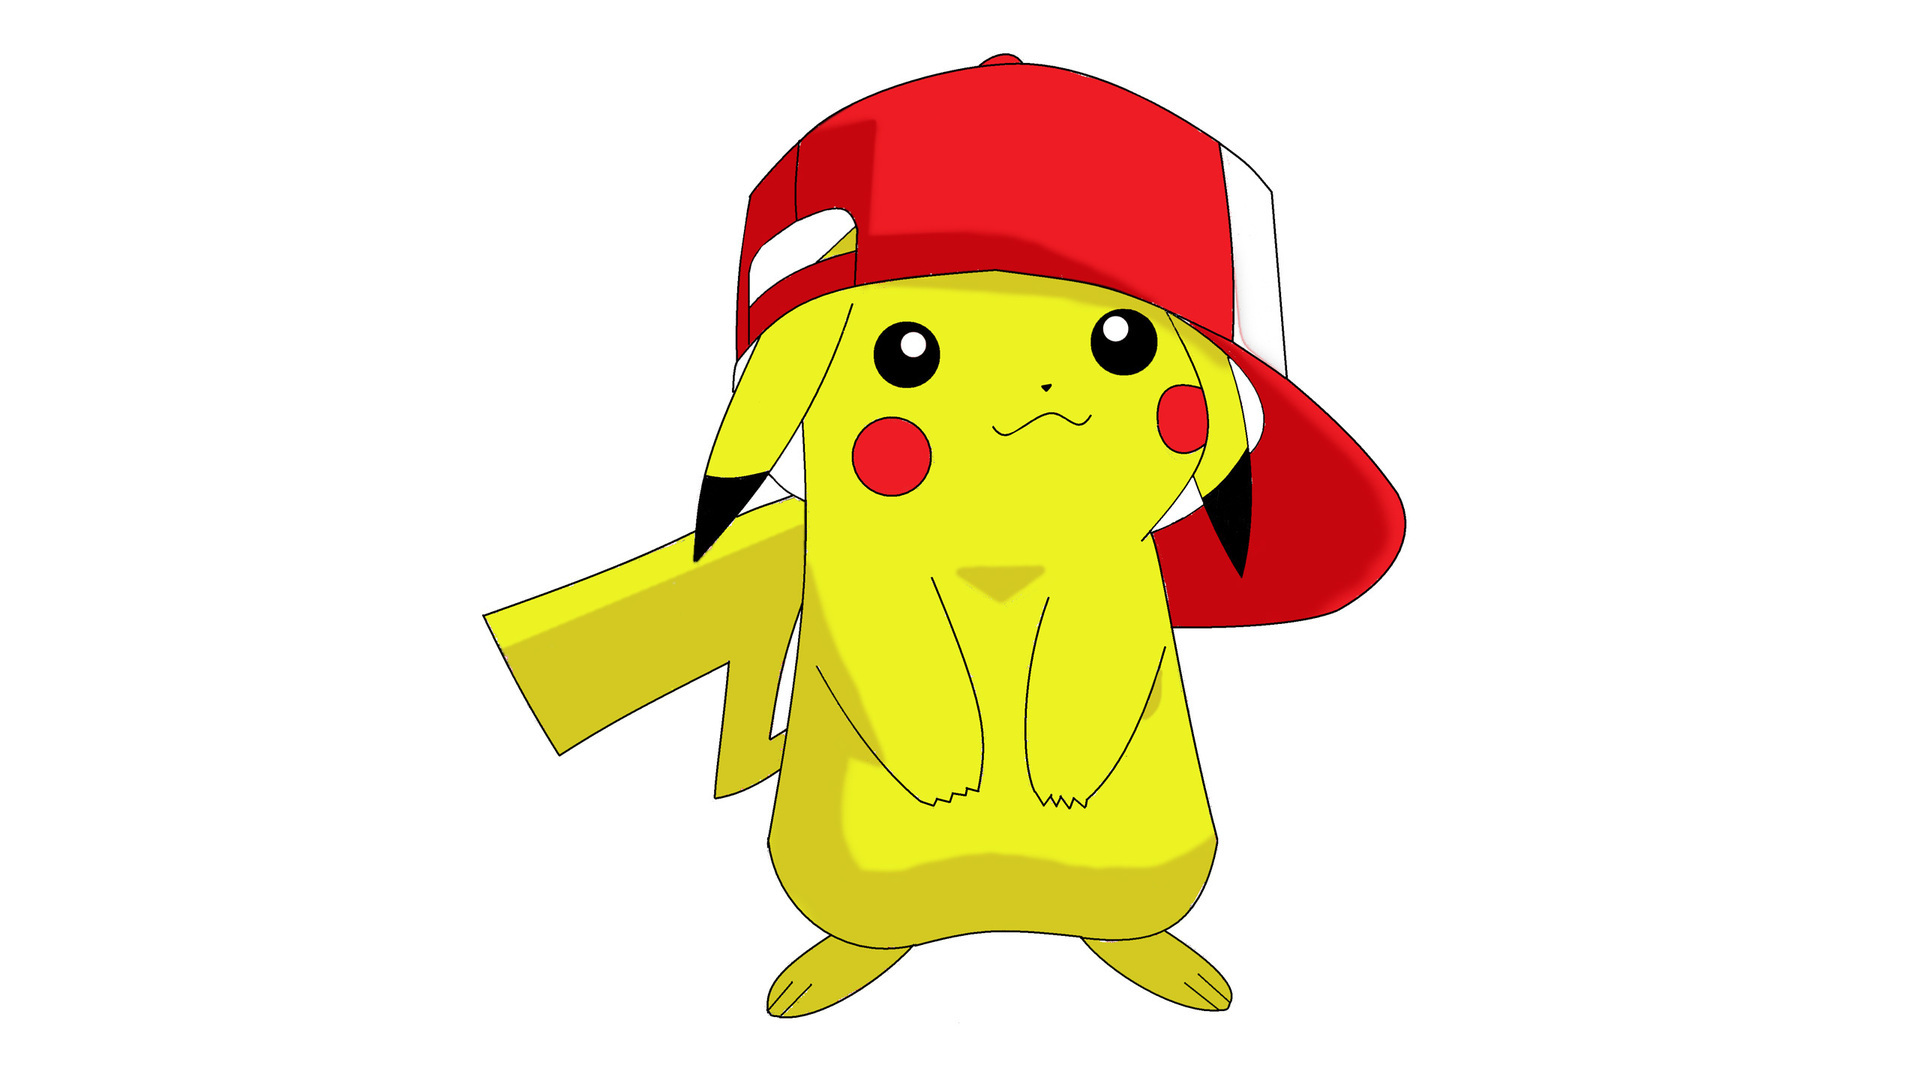 Video Game   Pokémon Pikachu Wallpaper - Pokemon, Transparent background PNG HD thumbnail